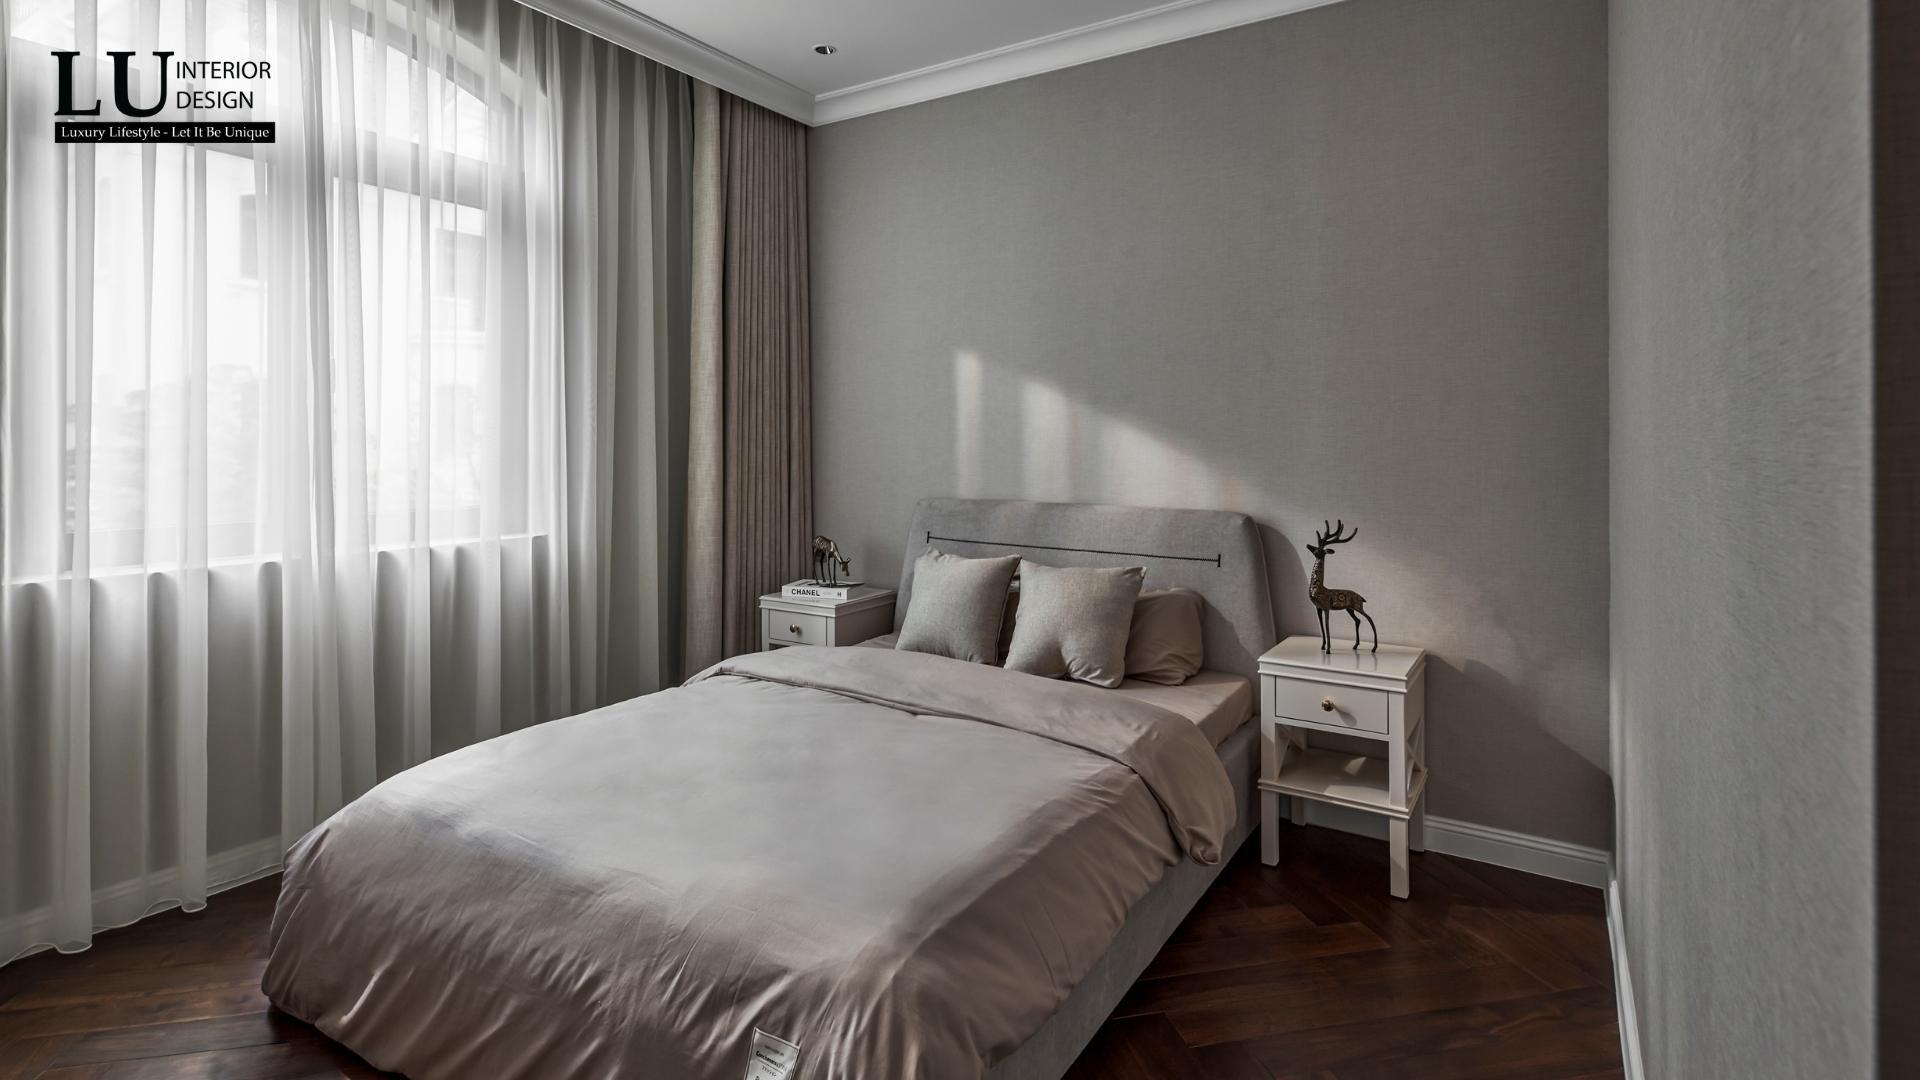 Hệ rèm thông minh dễ dàng điều chỉnh độ sáng cho căn phòng | Dự án Victoria Village - LU Design.